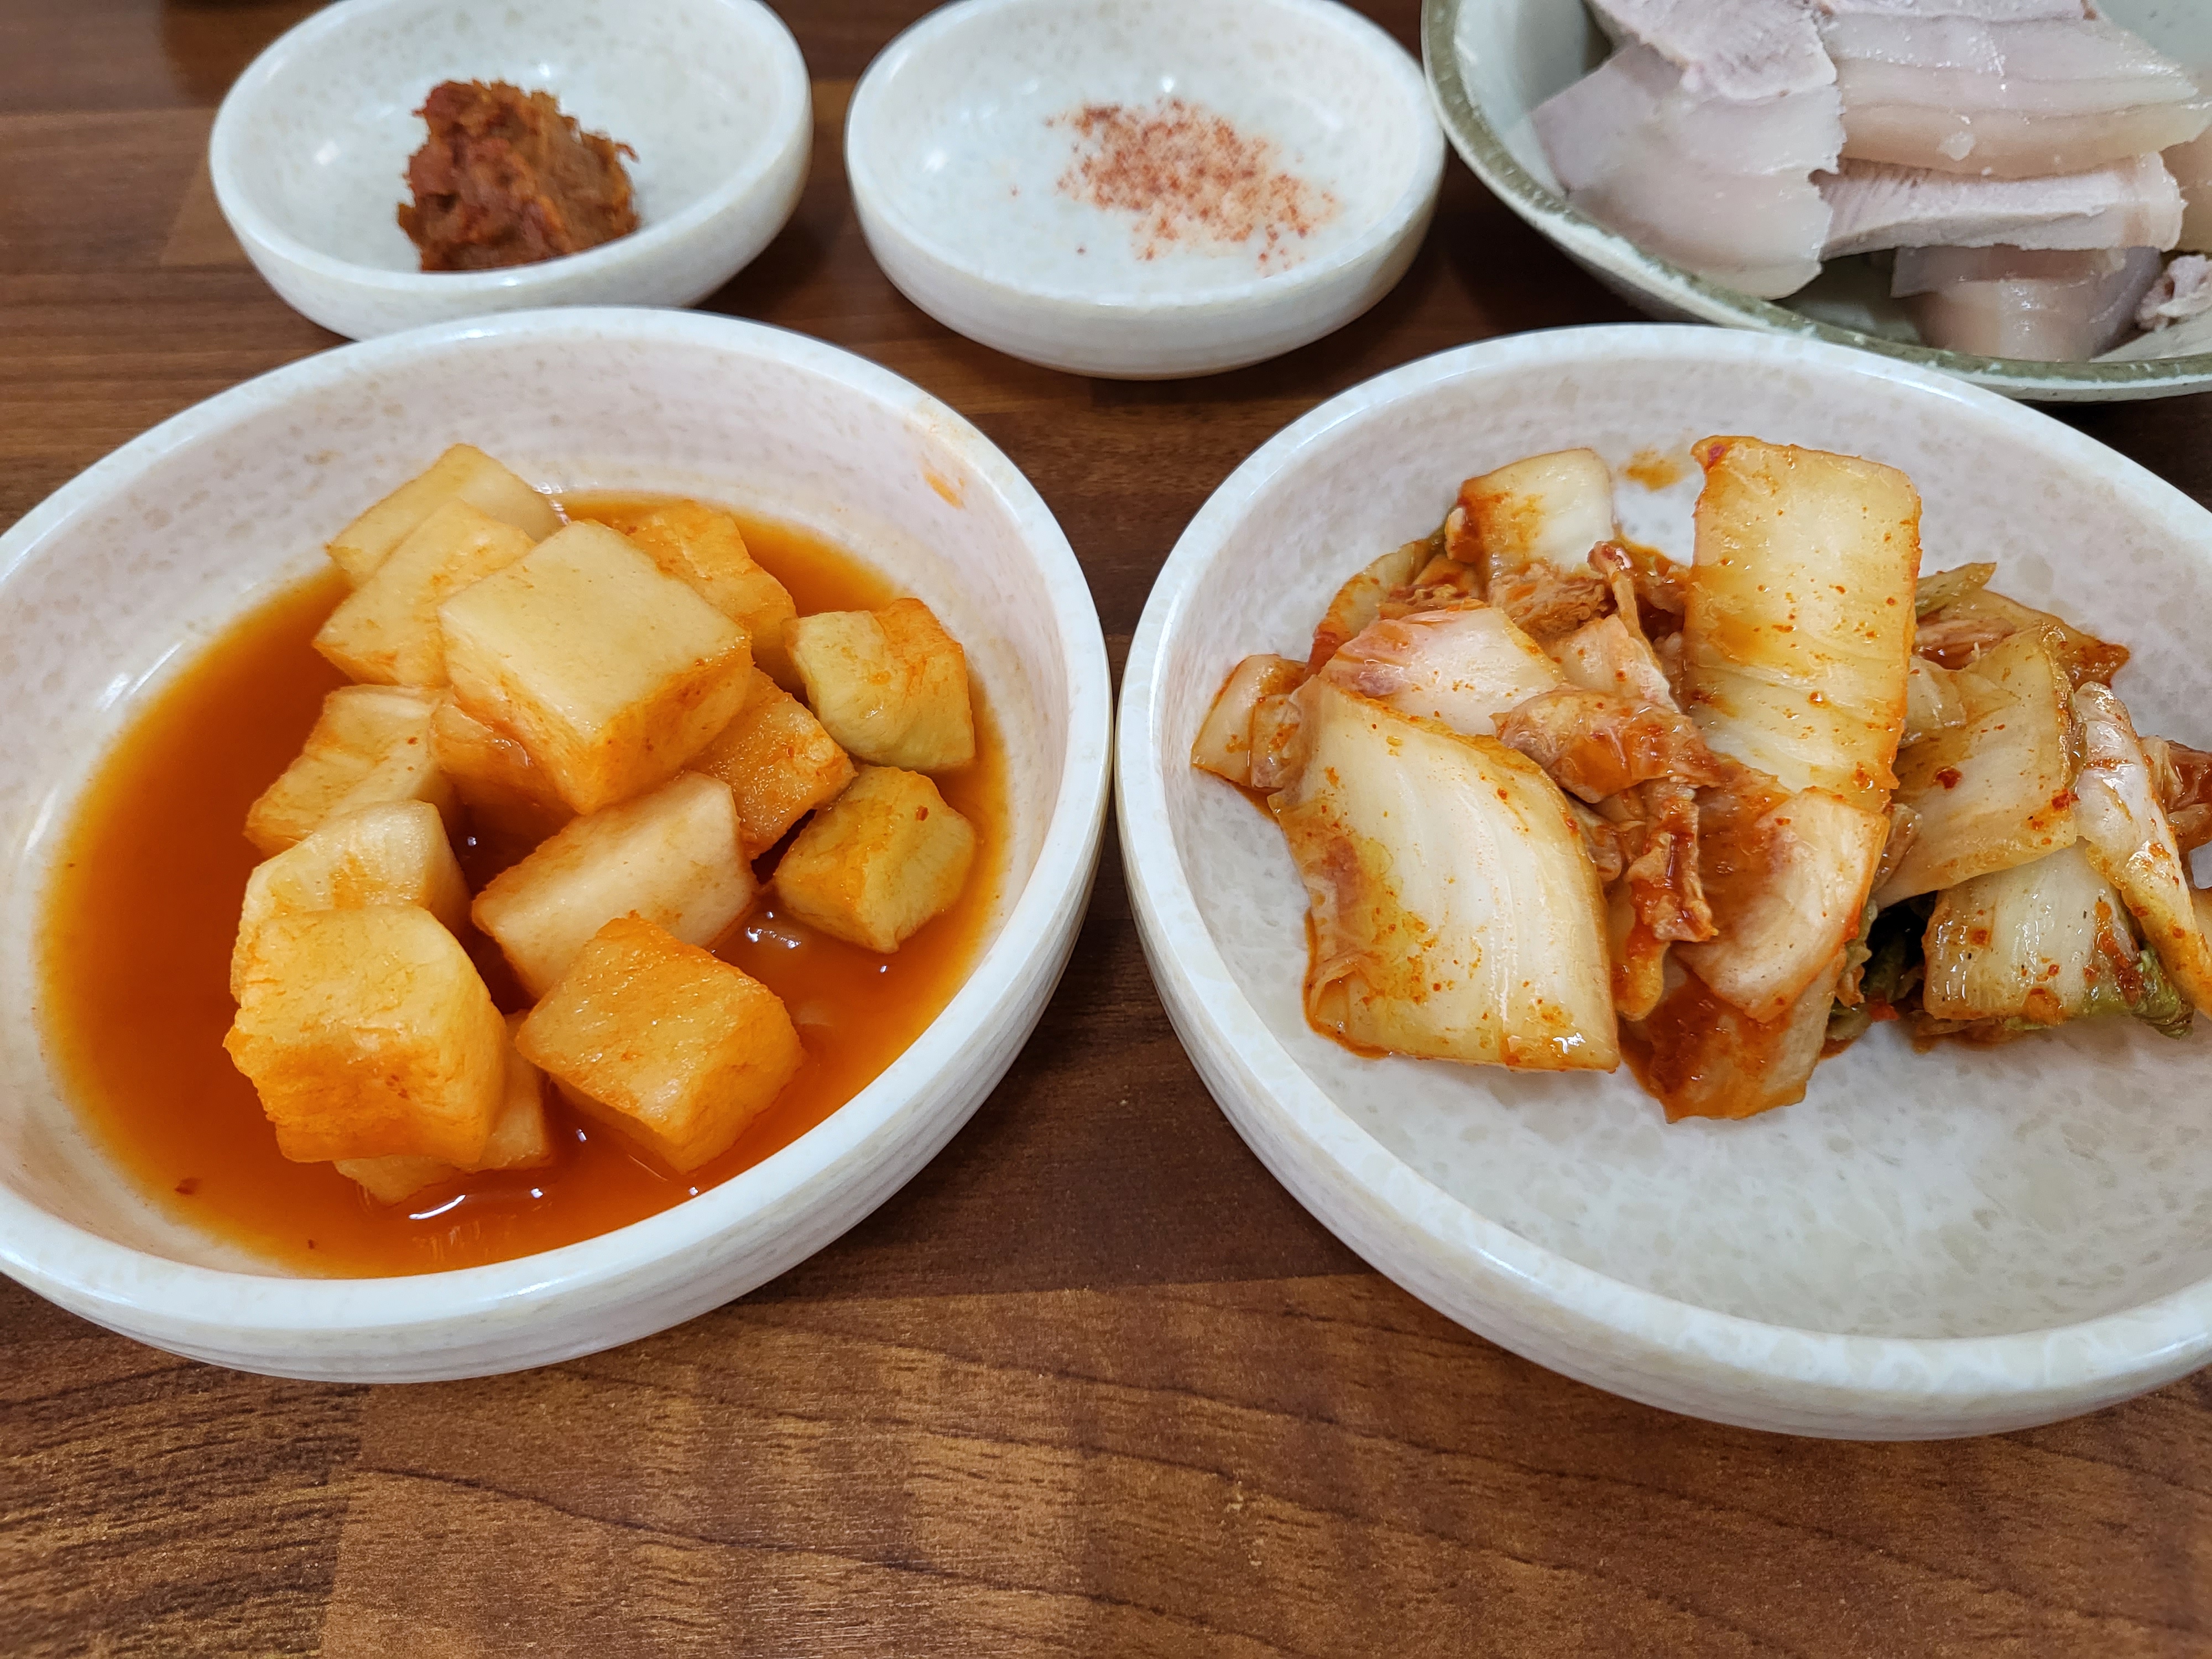 깍두기와 김치는 시큼하고 시원한 맛이라 고기국수와 잘 어울렸다.